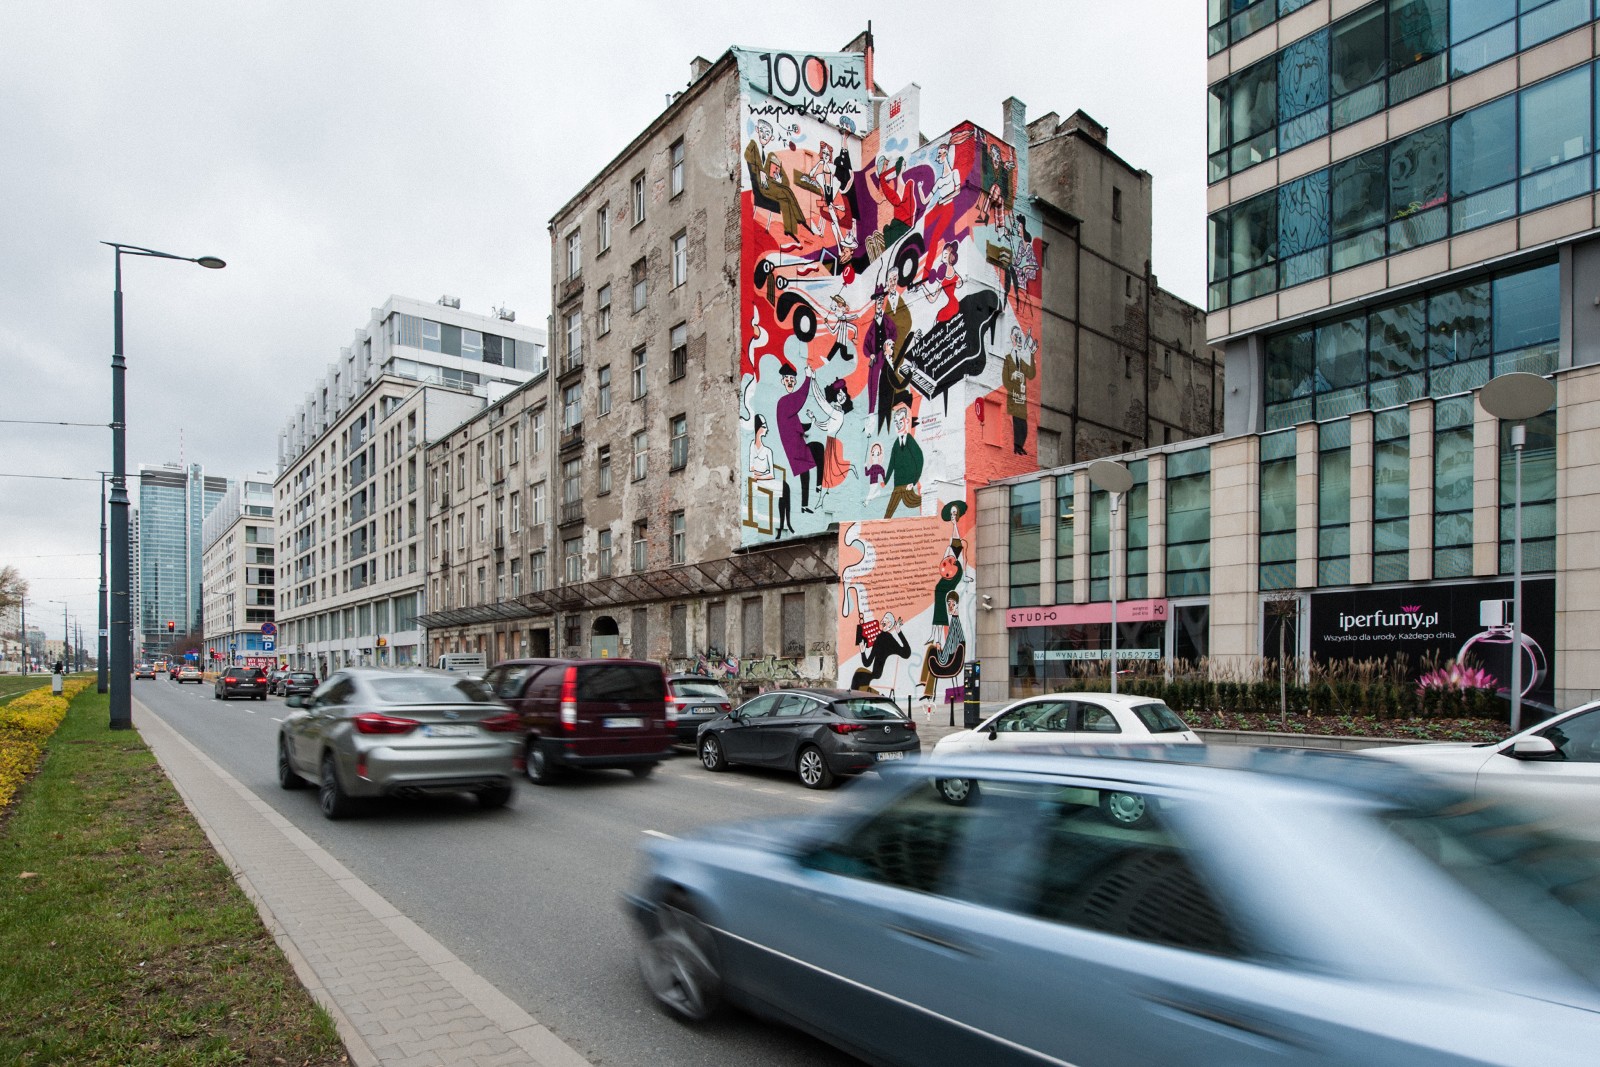 Kulturalny mural z okazji obchodów stulecia Niepodległości Polski przy Rondzie Daszyńskiego w Warszawie | Kulturalny mural na Stulecie Niepodległości Polski | Portfolio